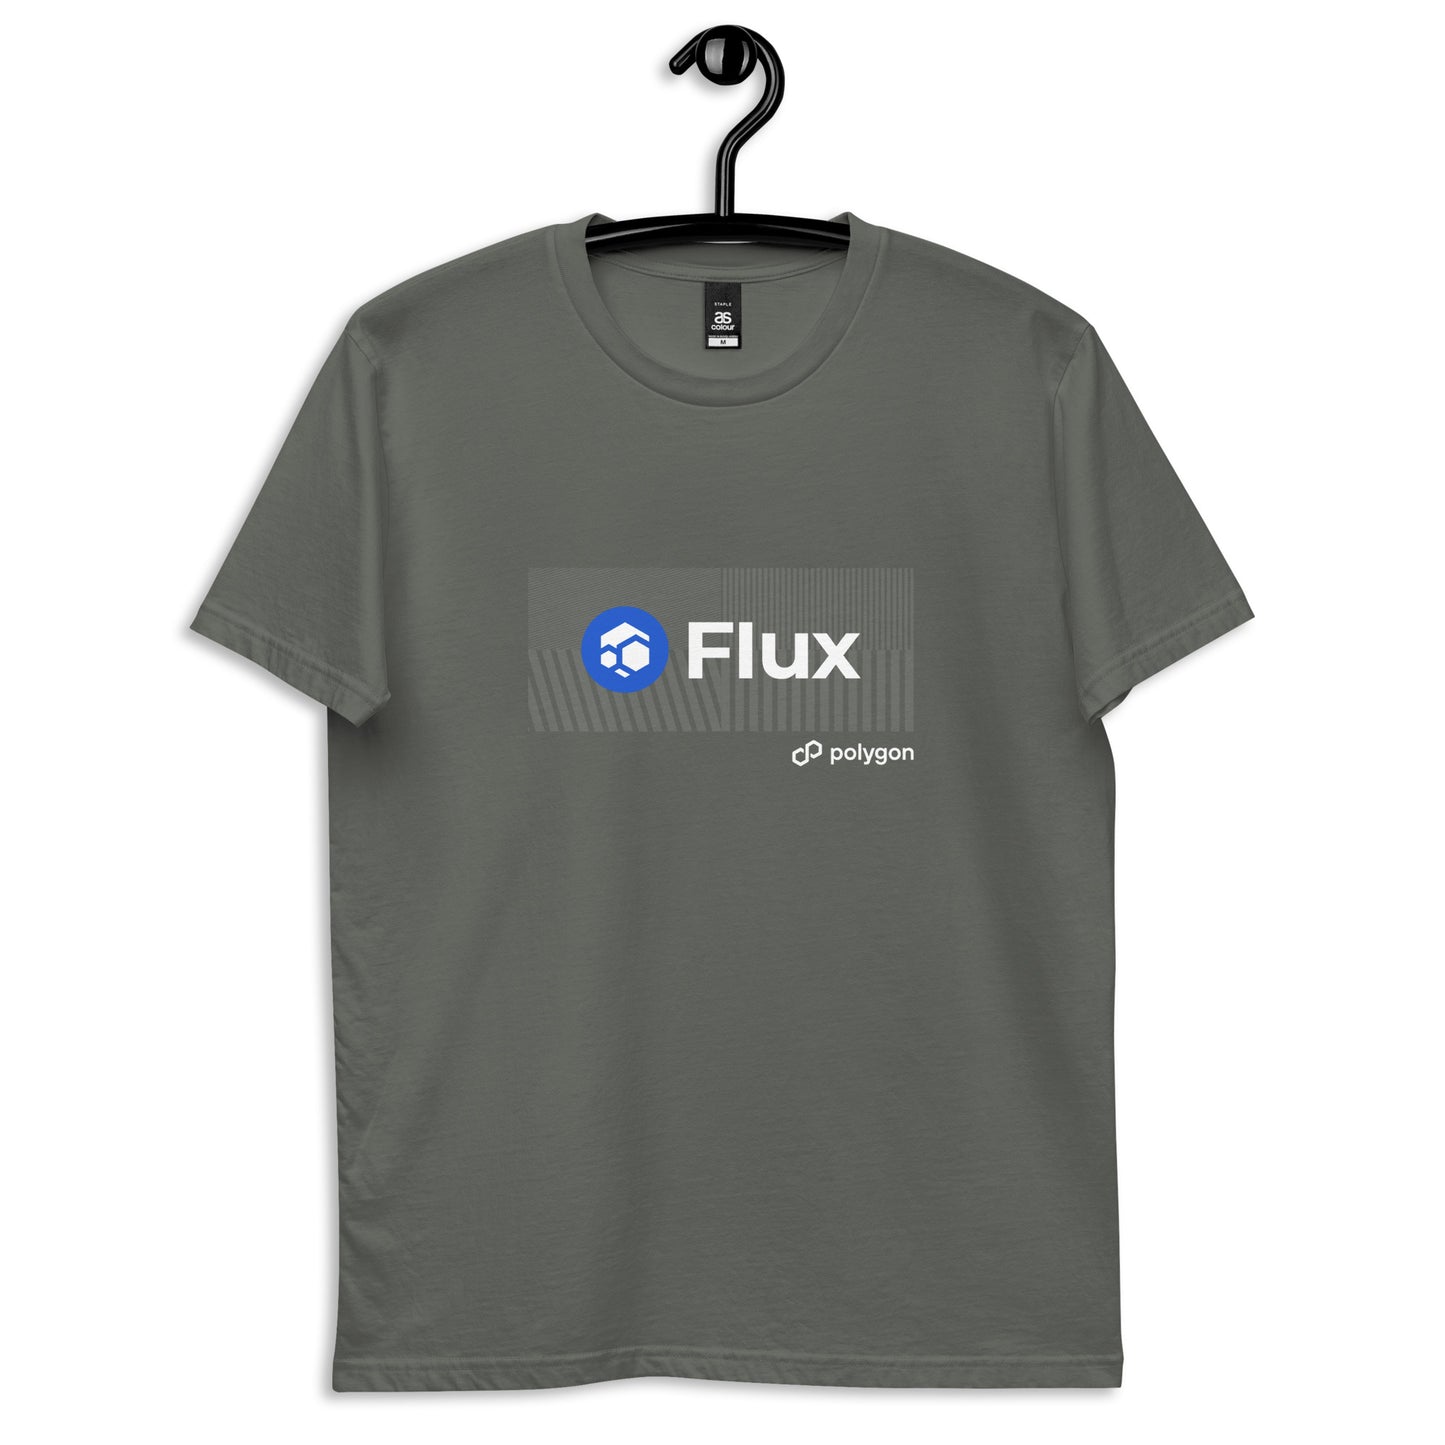 FLUX "Flux x Polygon" Men's tee